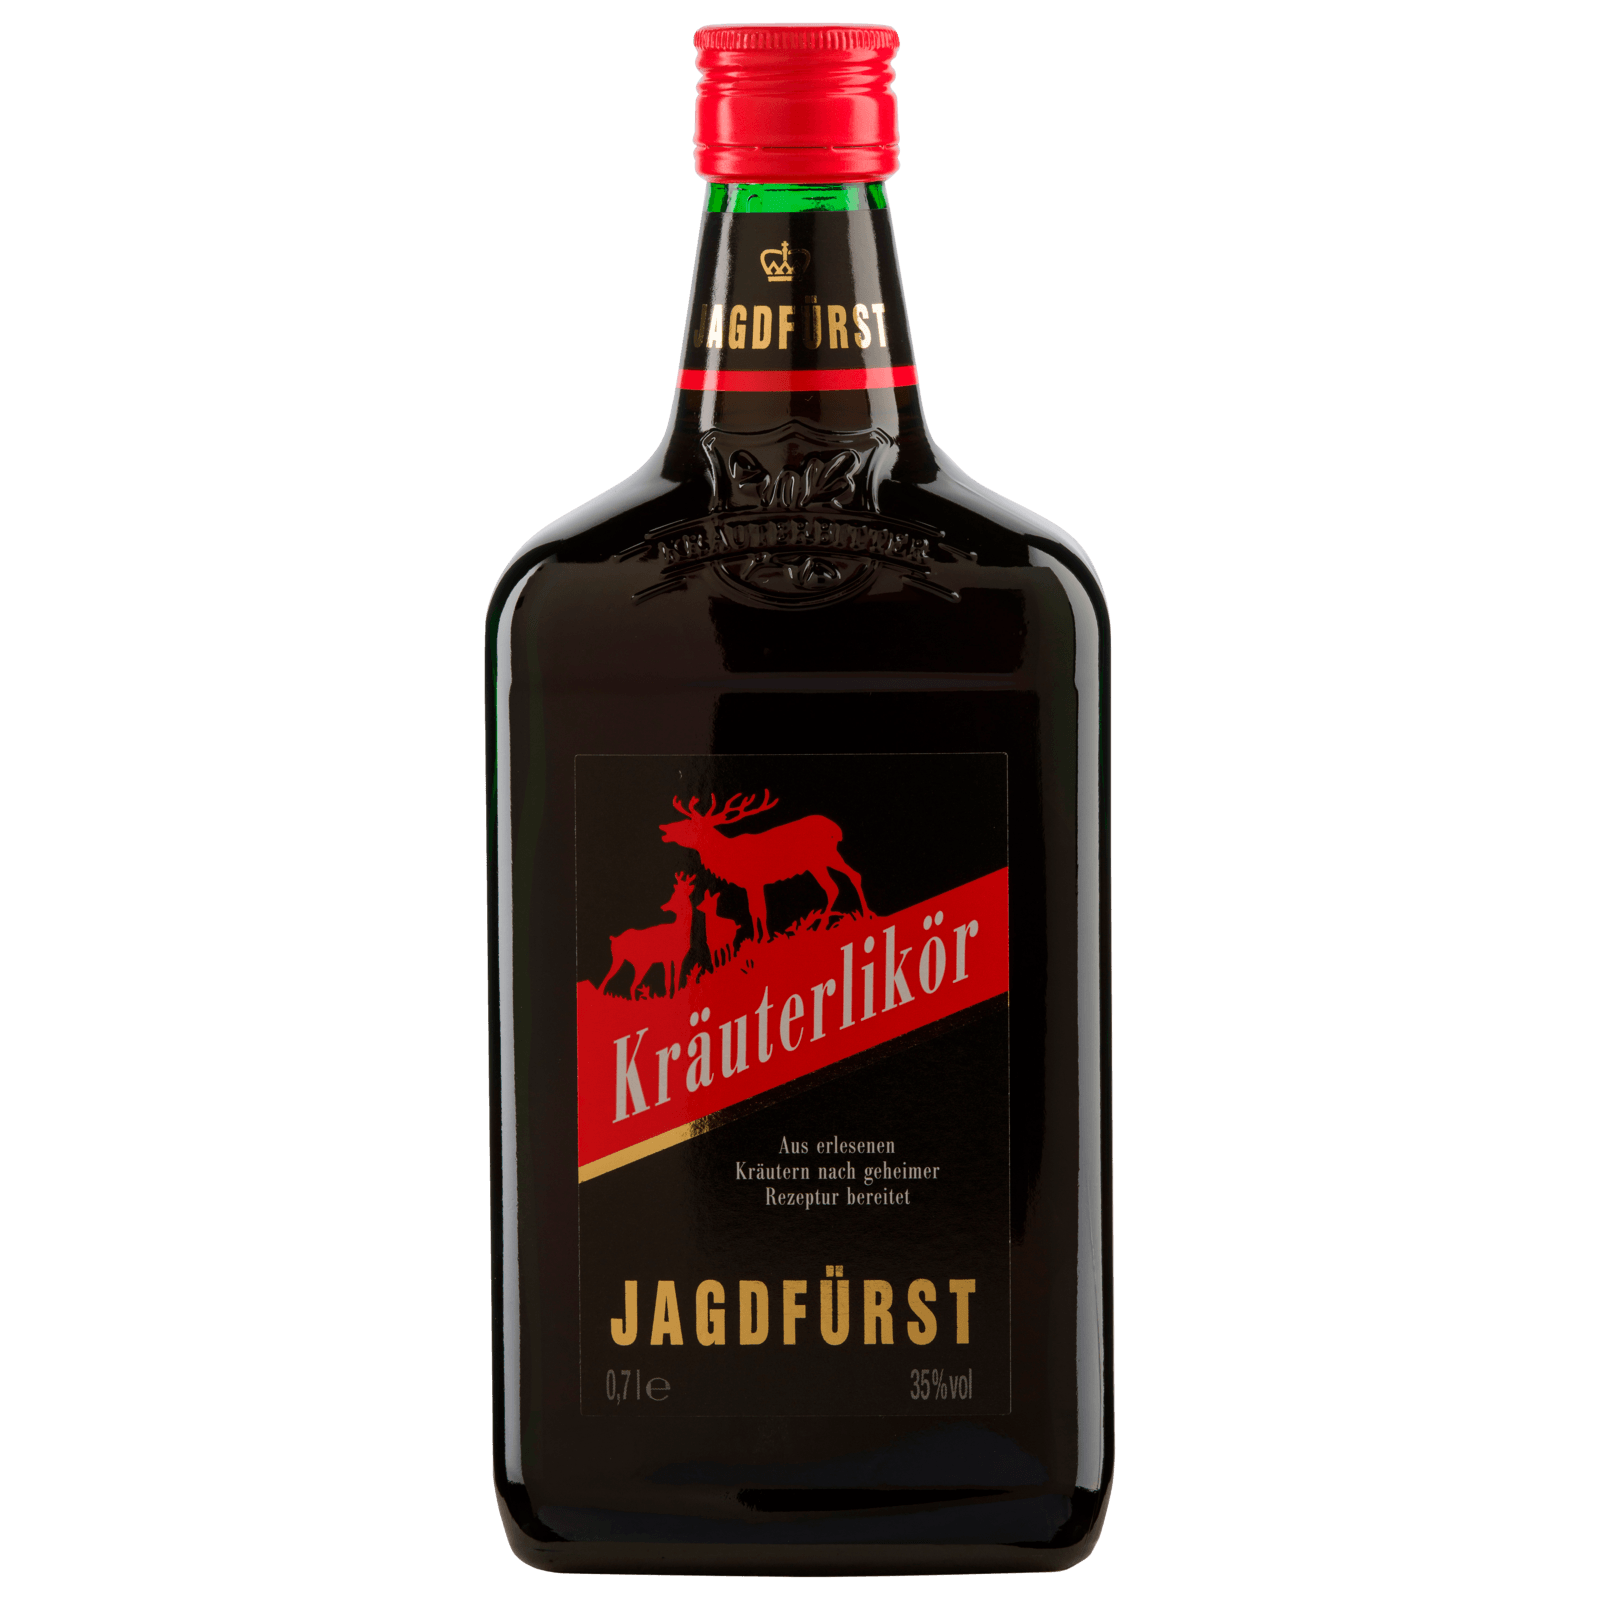 Jagdfürst Kräuterlikör 0,7l bei REWE online bestellen!